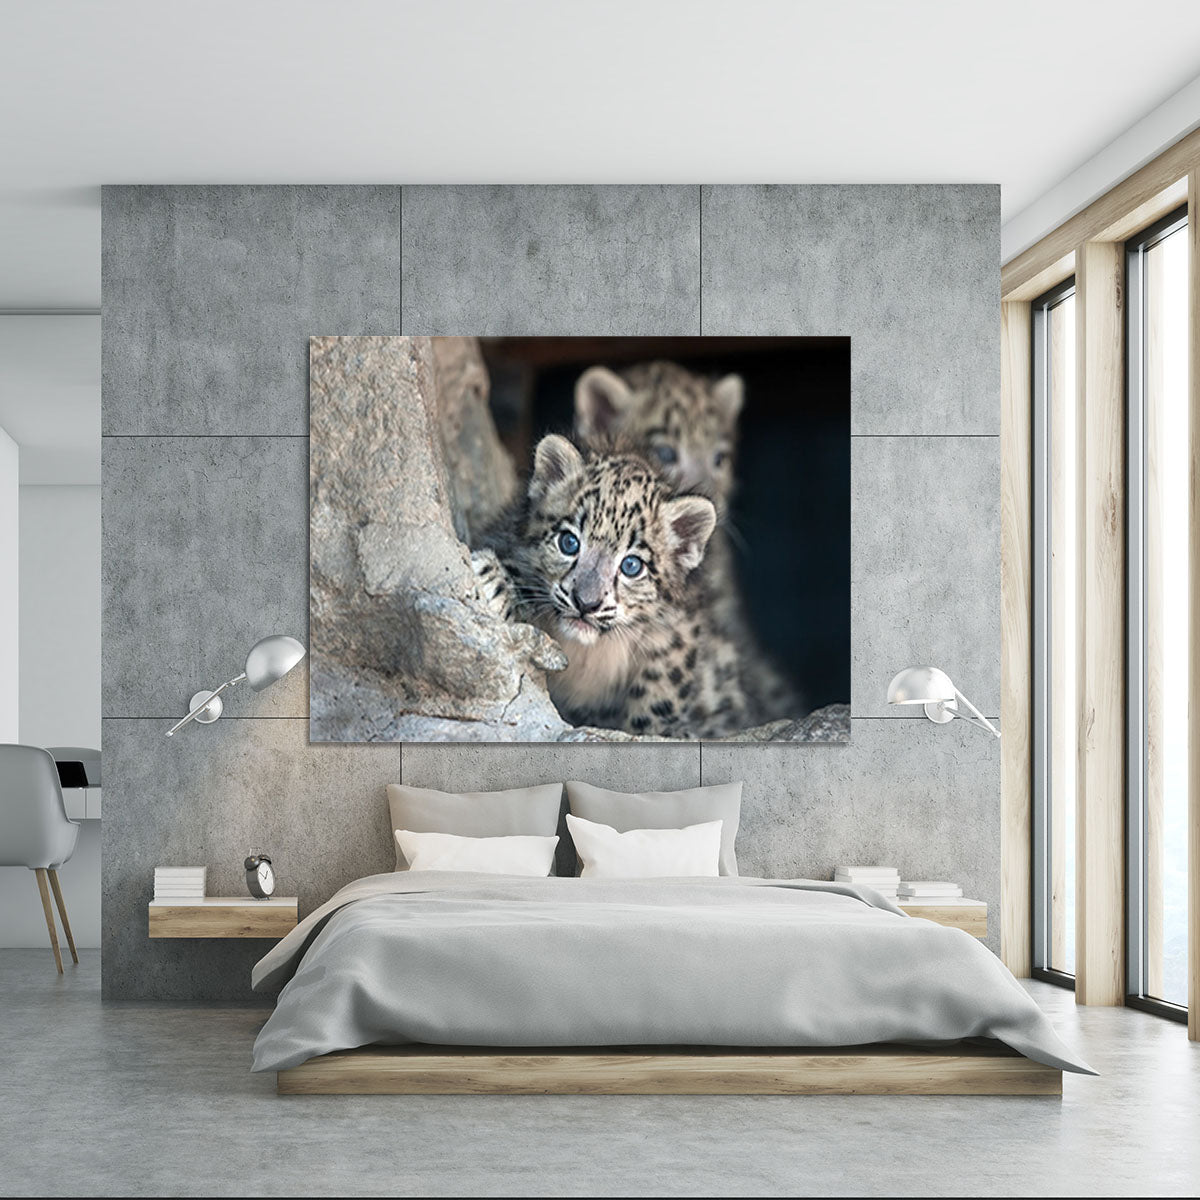 Snow leopard baby portrait Canvas Print or Poster - Canvas Art Rocks - 5